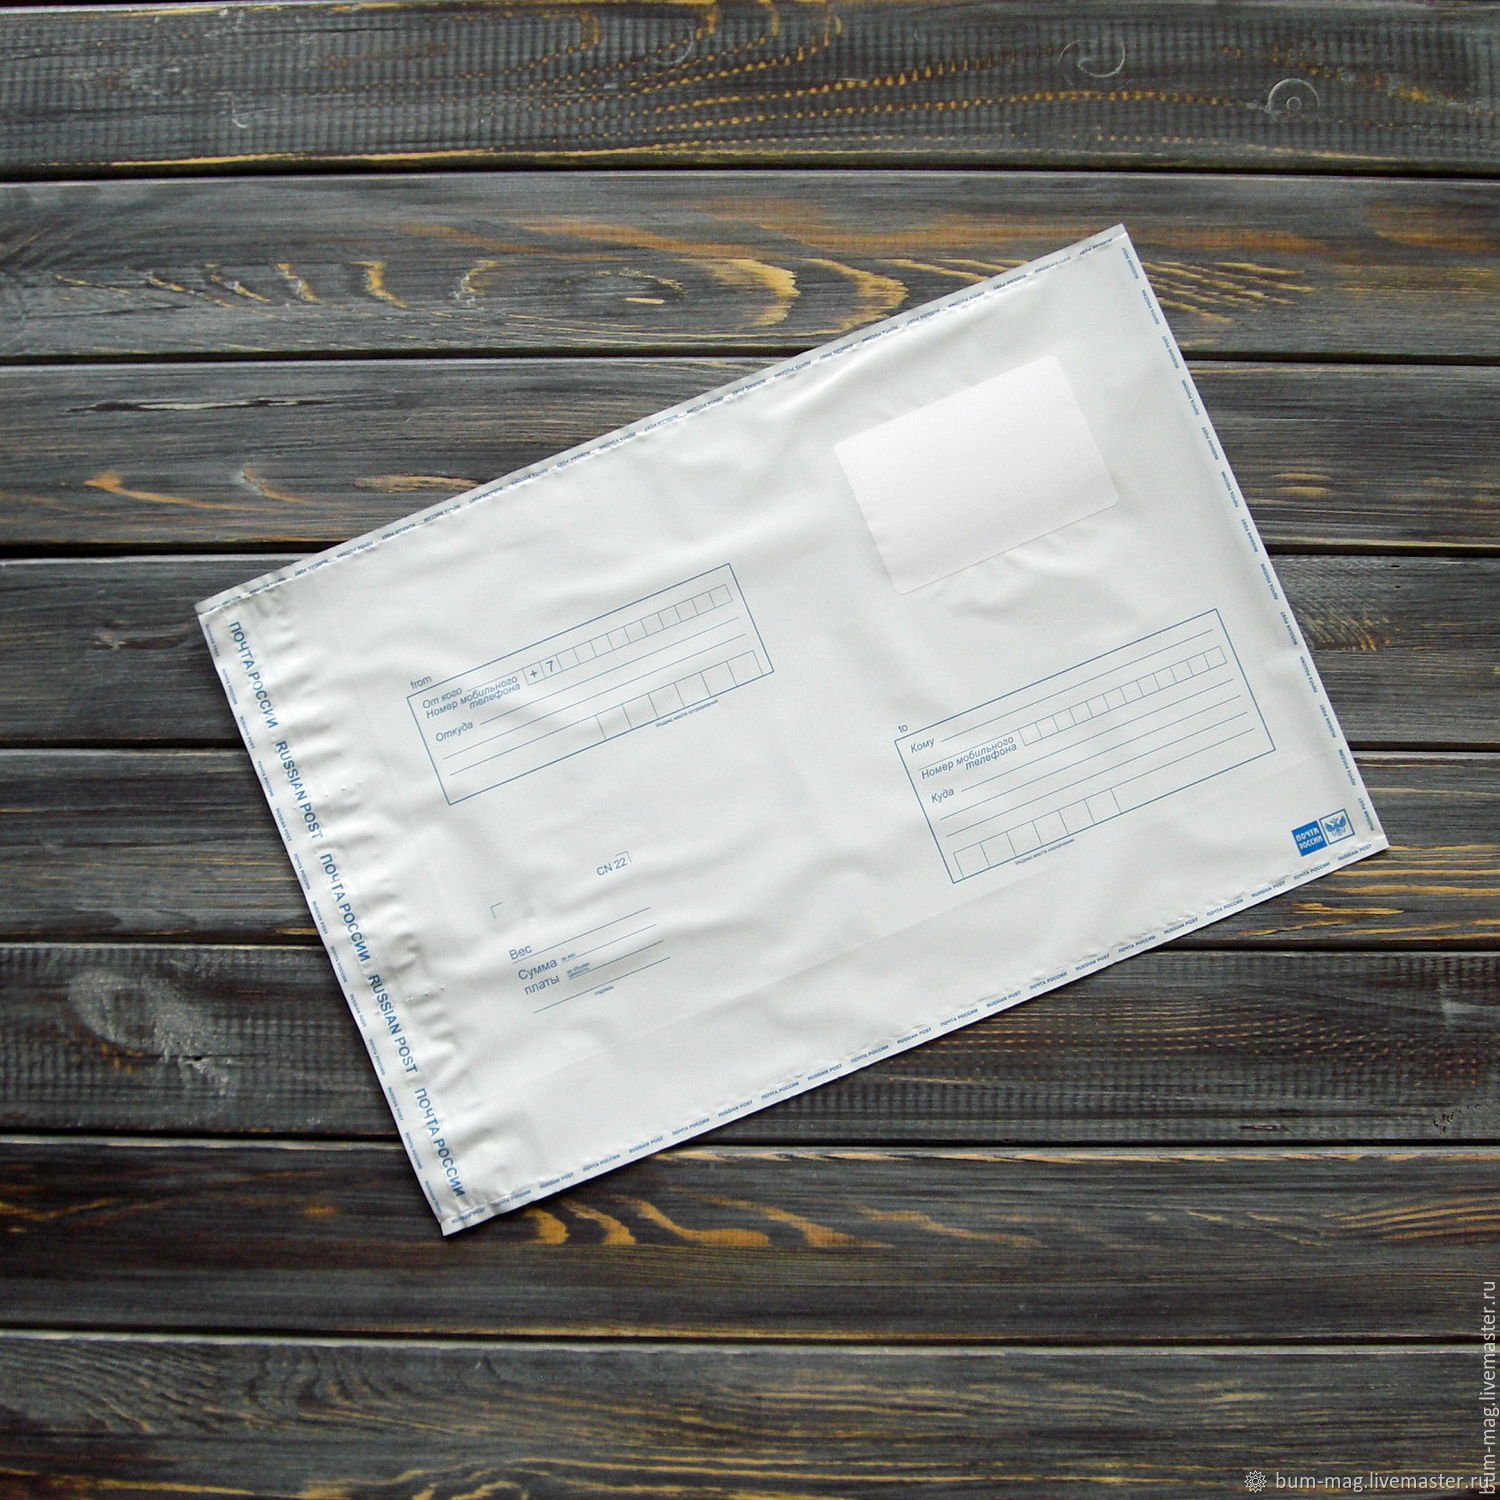 Пакет почтовый полиэтиленовый. Пакет почтовый полиэтиленовый XL 595 × 700. Пакет для пересылки. Пакет для бандероли. Пакеты упаковочные на почте.